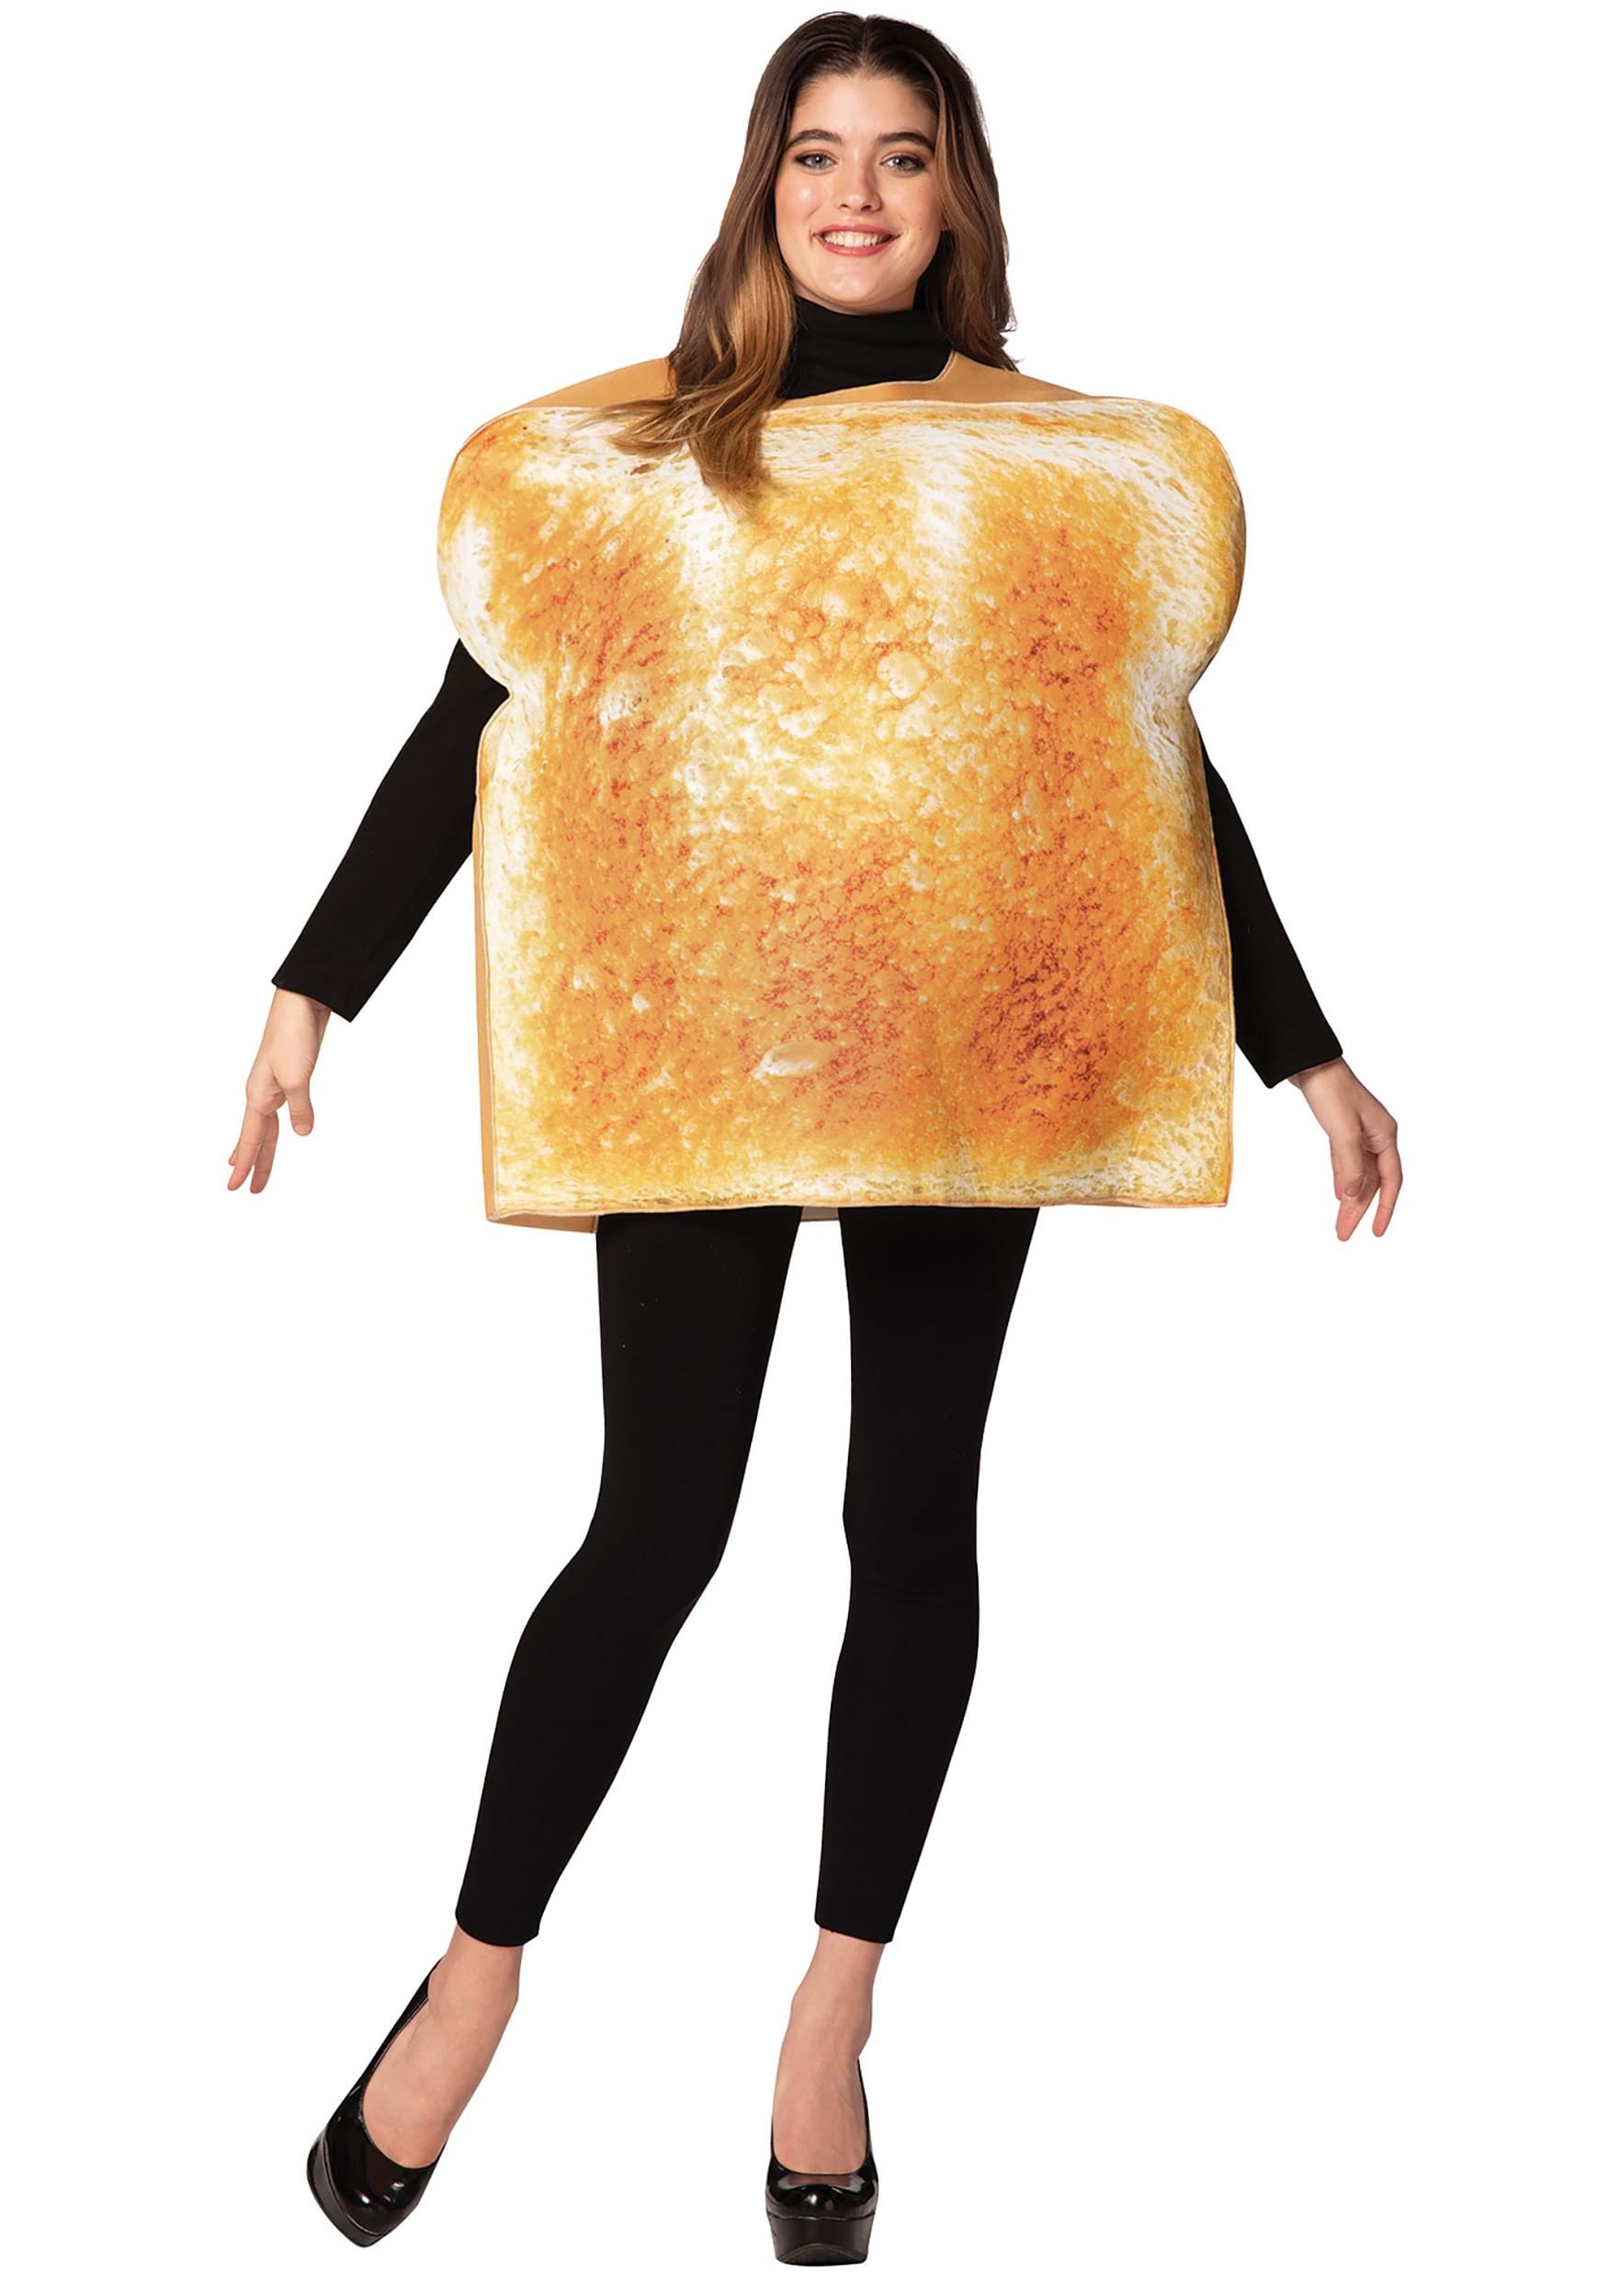 Toast costume